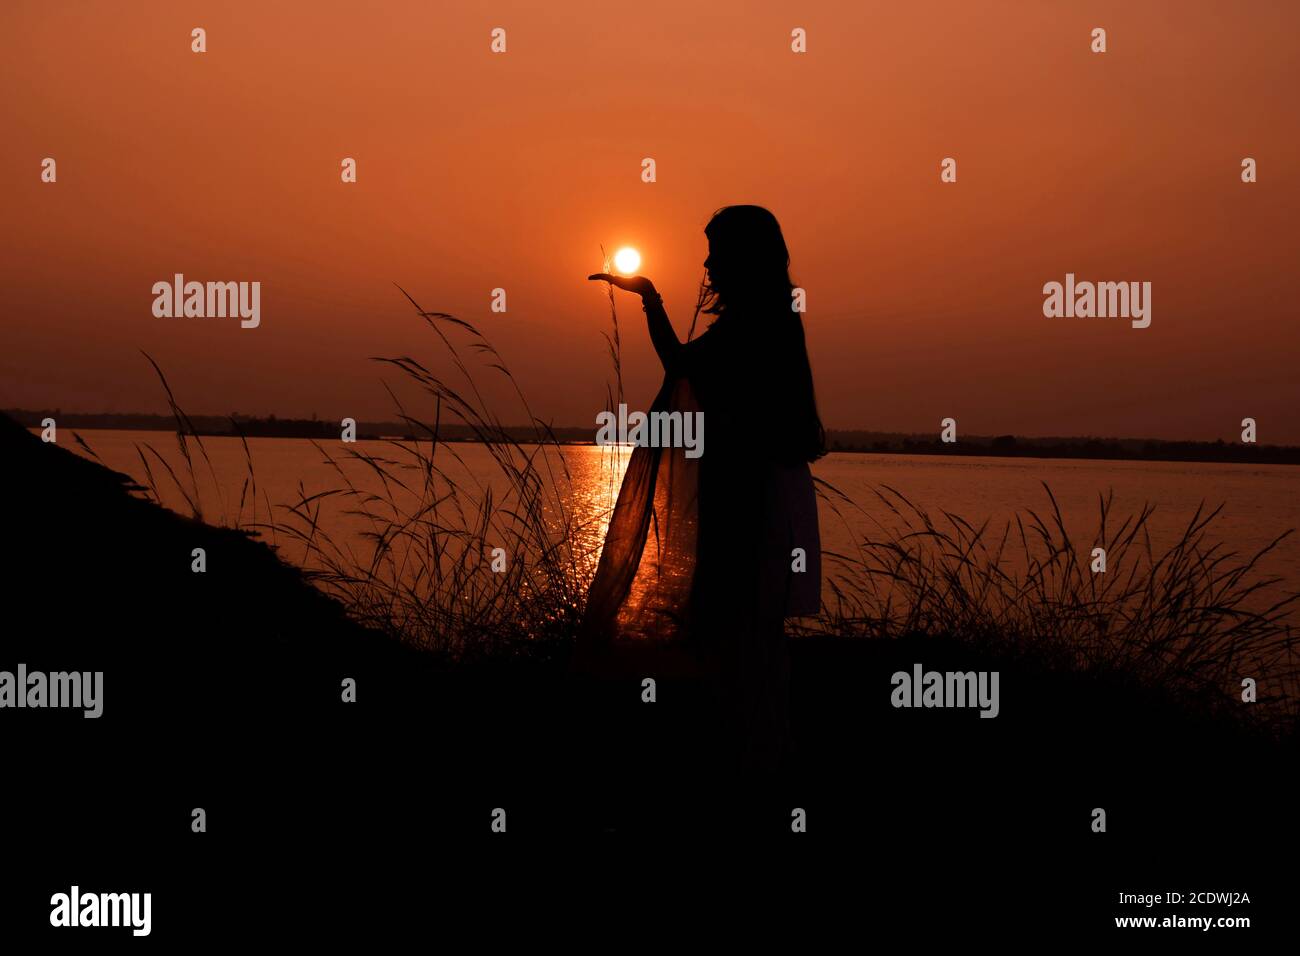 Am 5. Januar 2020 orange Sonnenuntergang hinter Gras Silhouette Mädchen Frau hält Sonne auf der Hand in Bakerswar Damm, birbhum, West Bengal, Indien Stockfoto